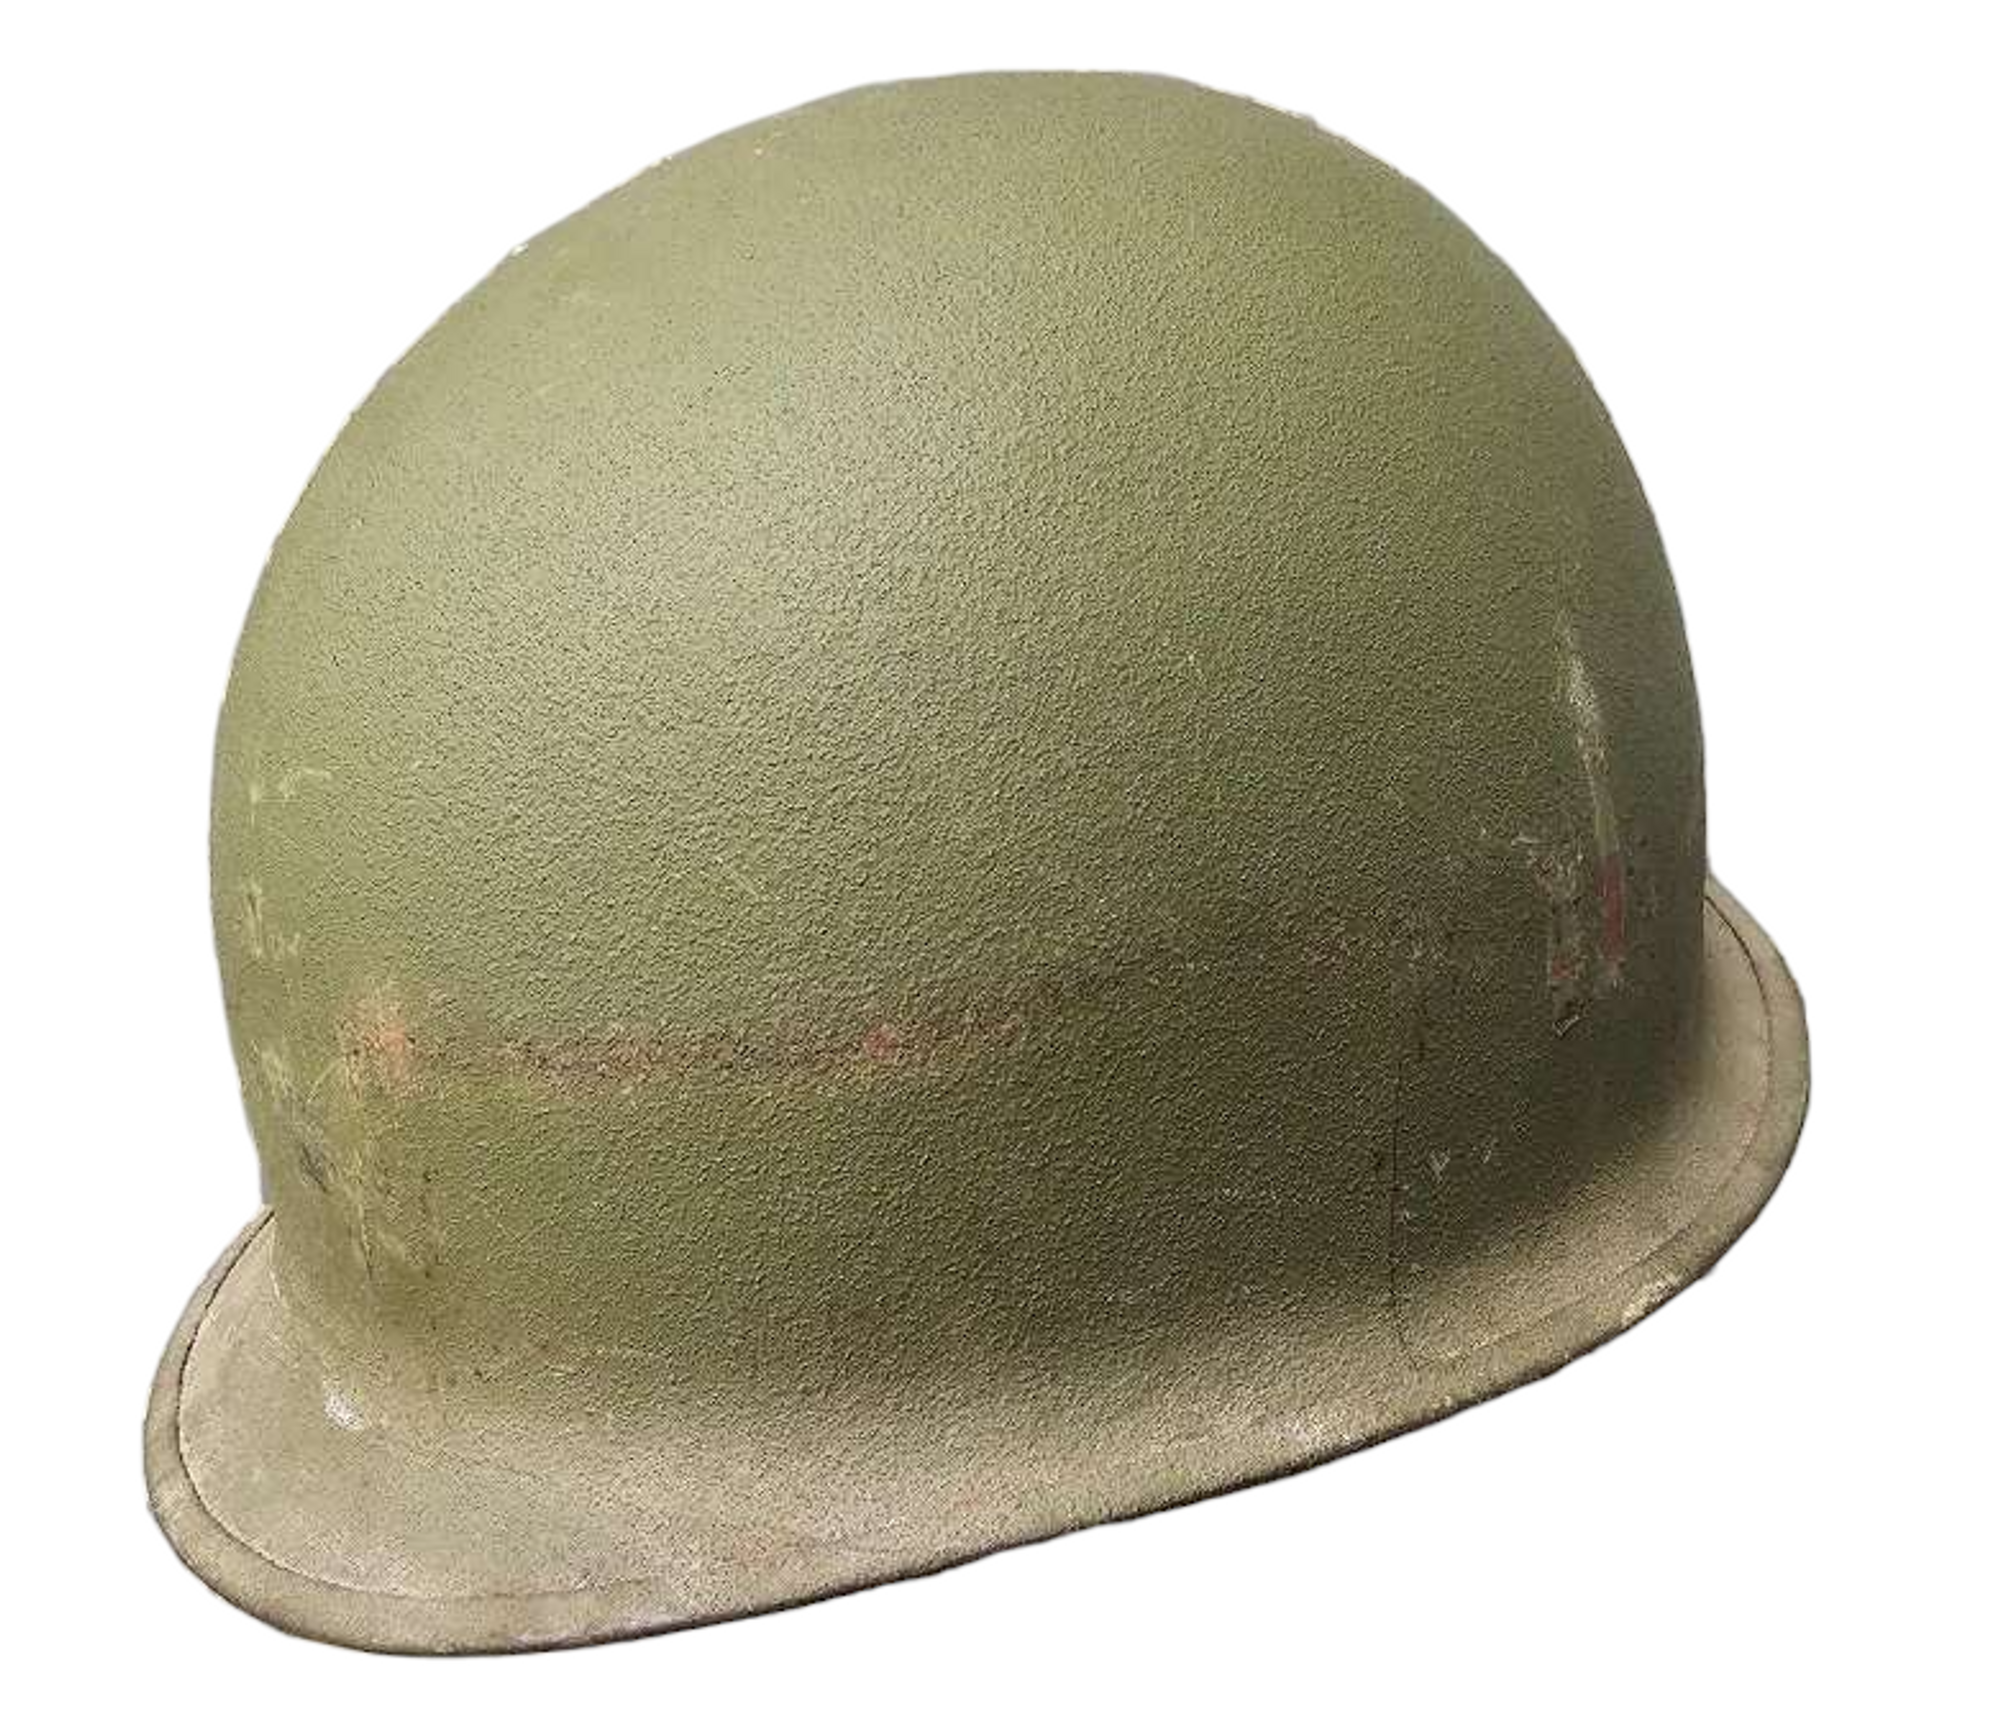 U.S. Armed Forces M1 Steel Helmet - Cracked